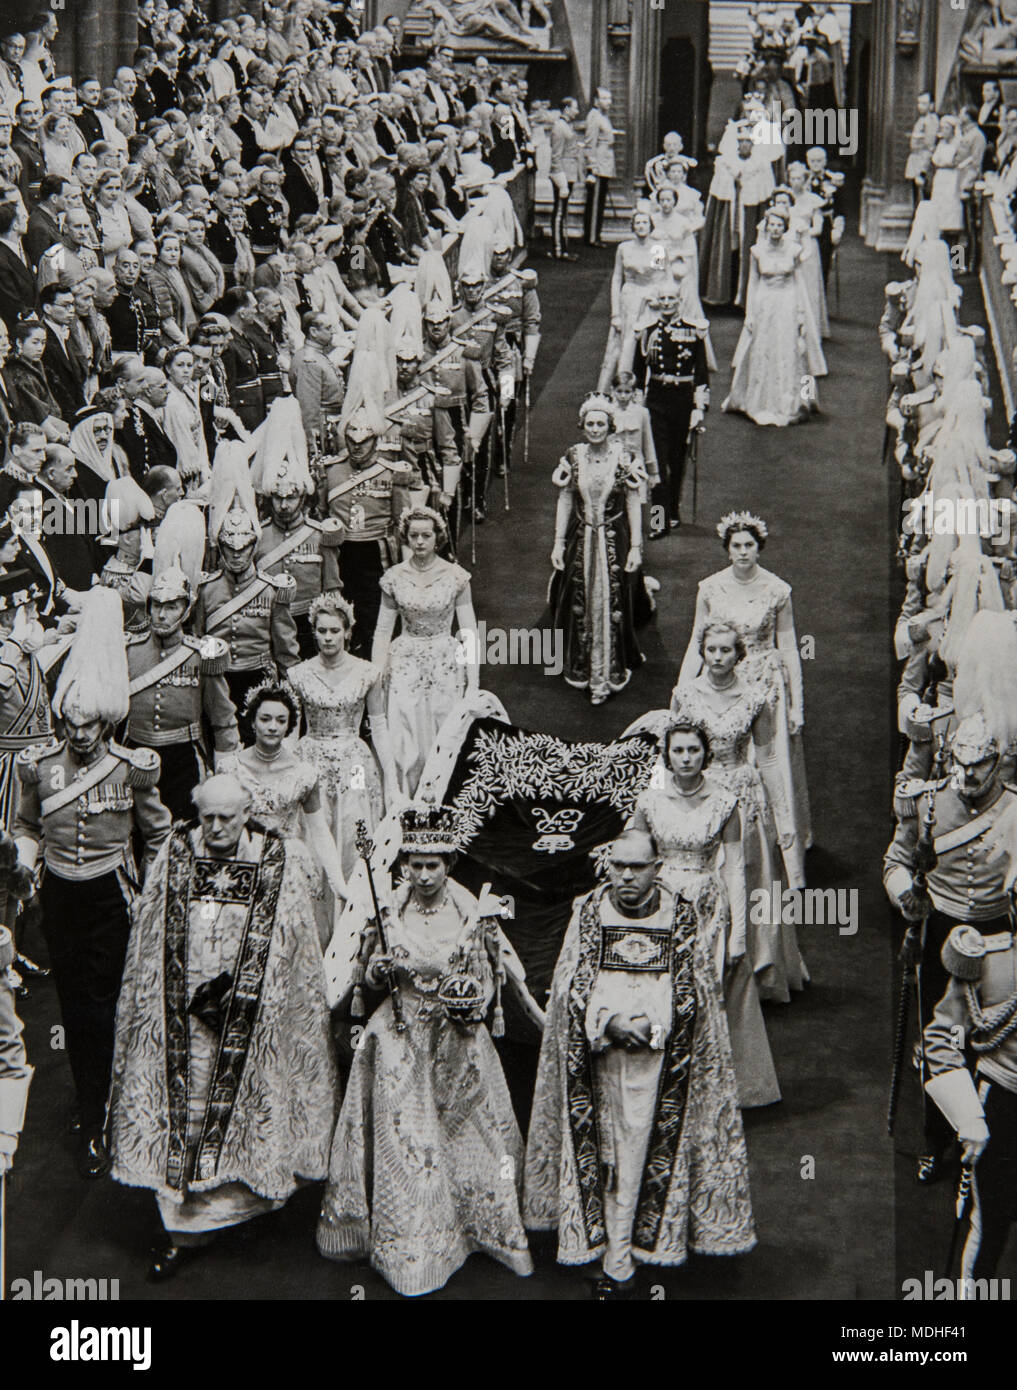 Die Kronung Von Konigin Elizabeth Ii Am 2 Juni 1953 In Der Westminster Abbey London Stockfotografie Alamy